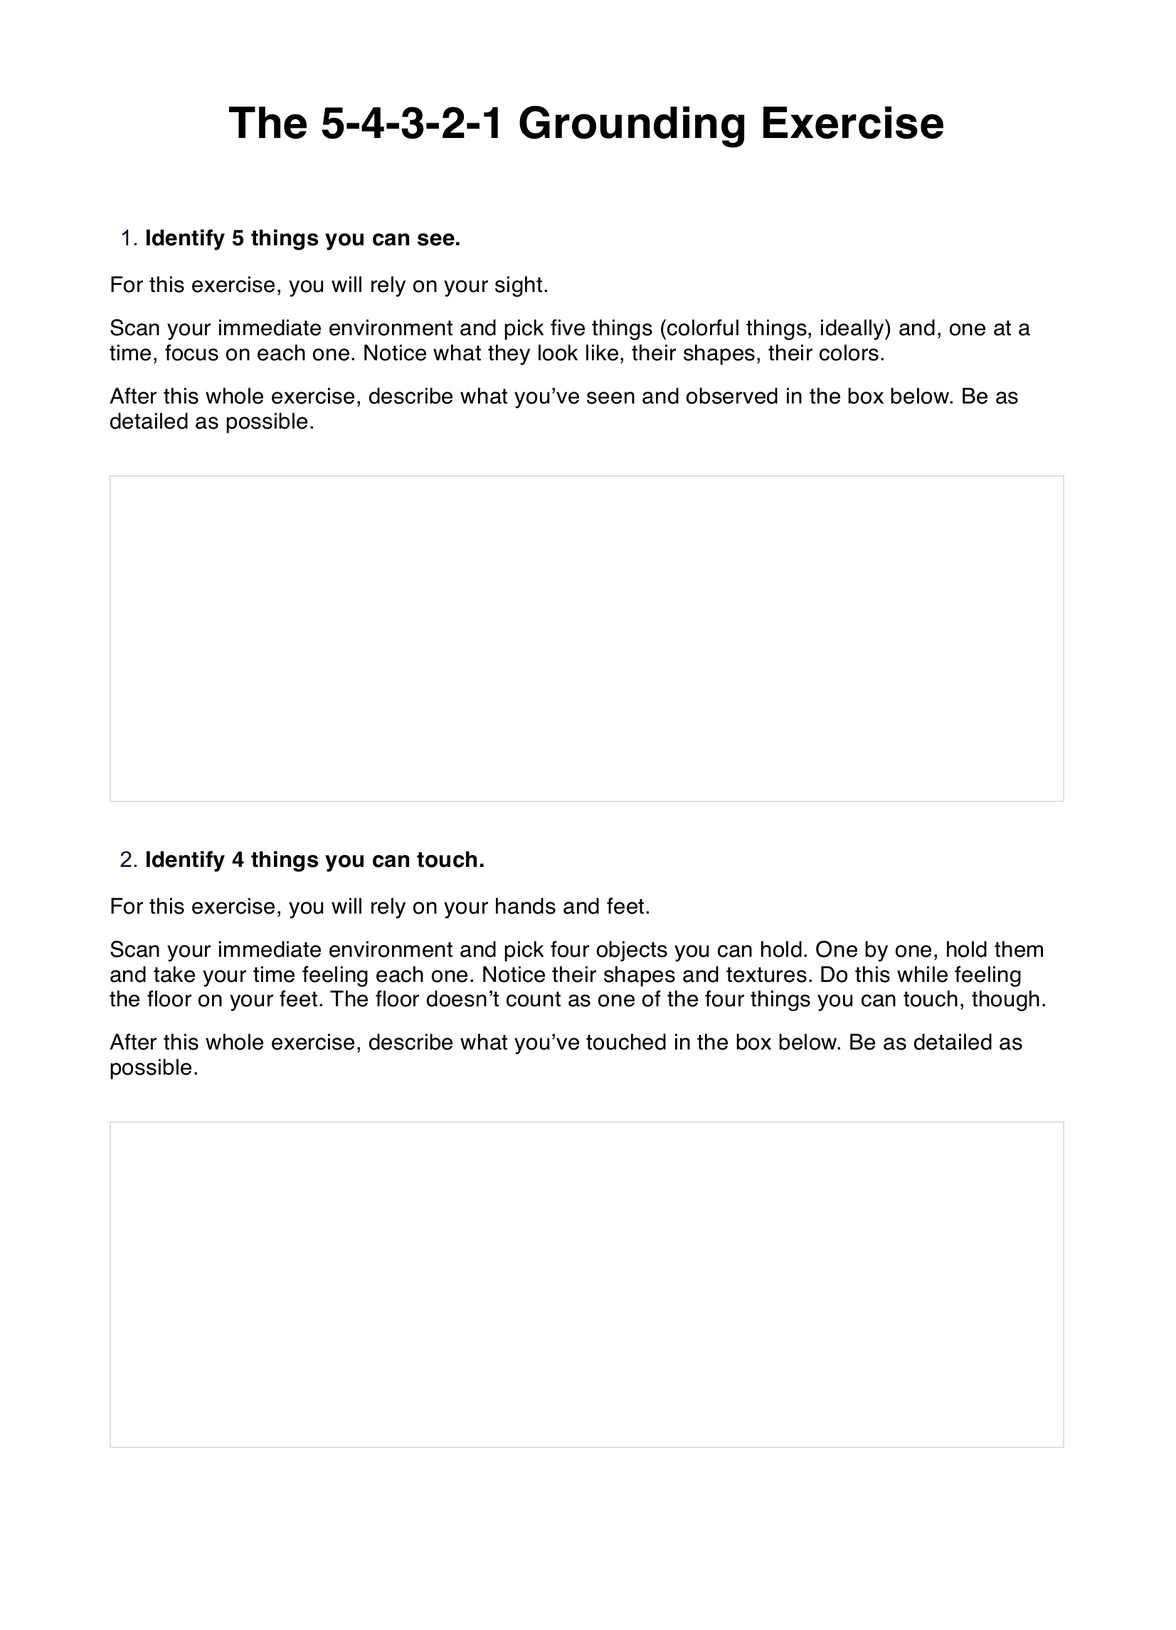 5-4-3-2-1 Grounding PDF PDF Example